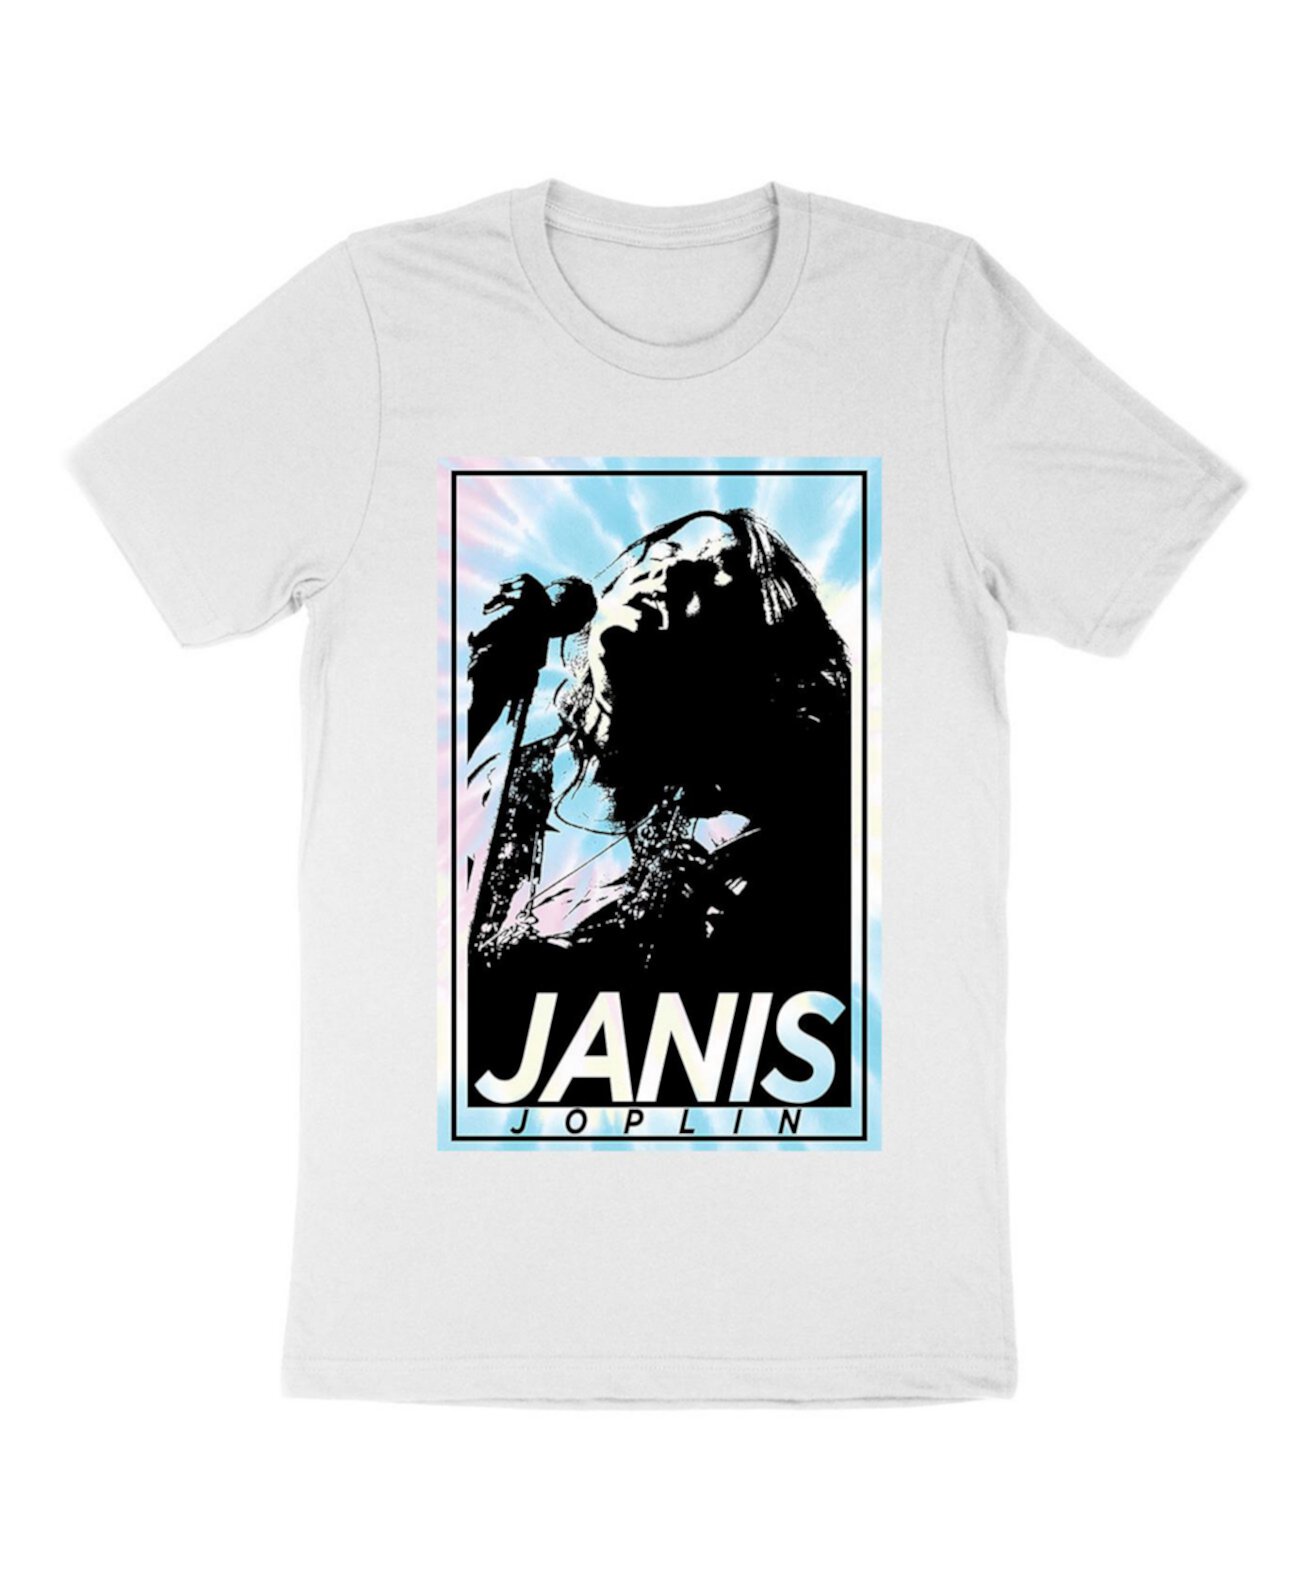 Мужская футболка с рисунком Simply Janis MONSTER DIGITAL TSC